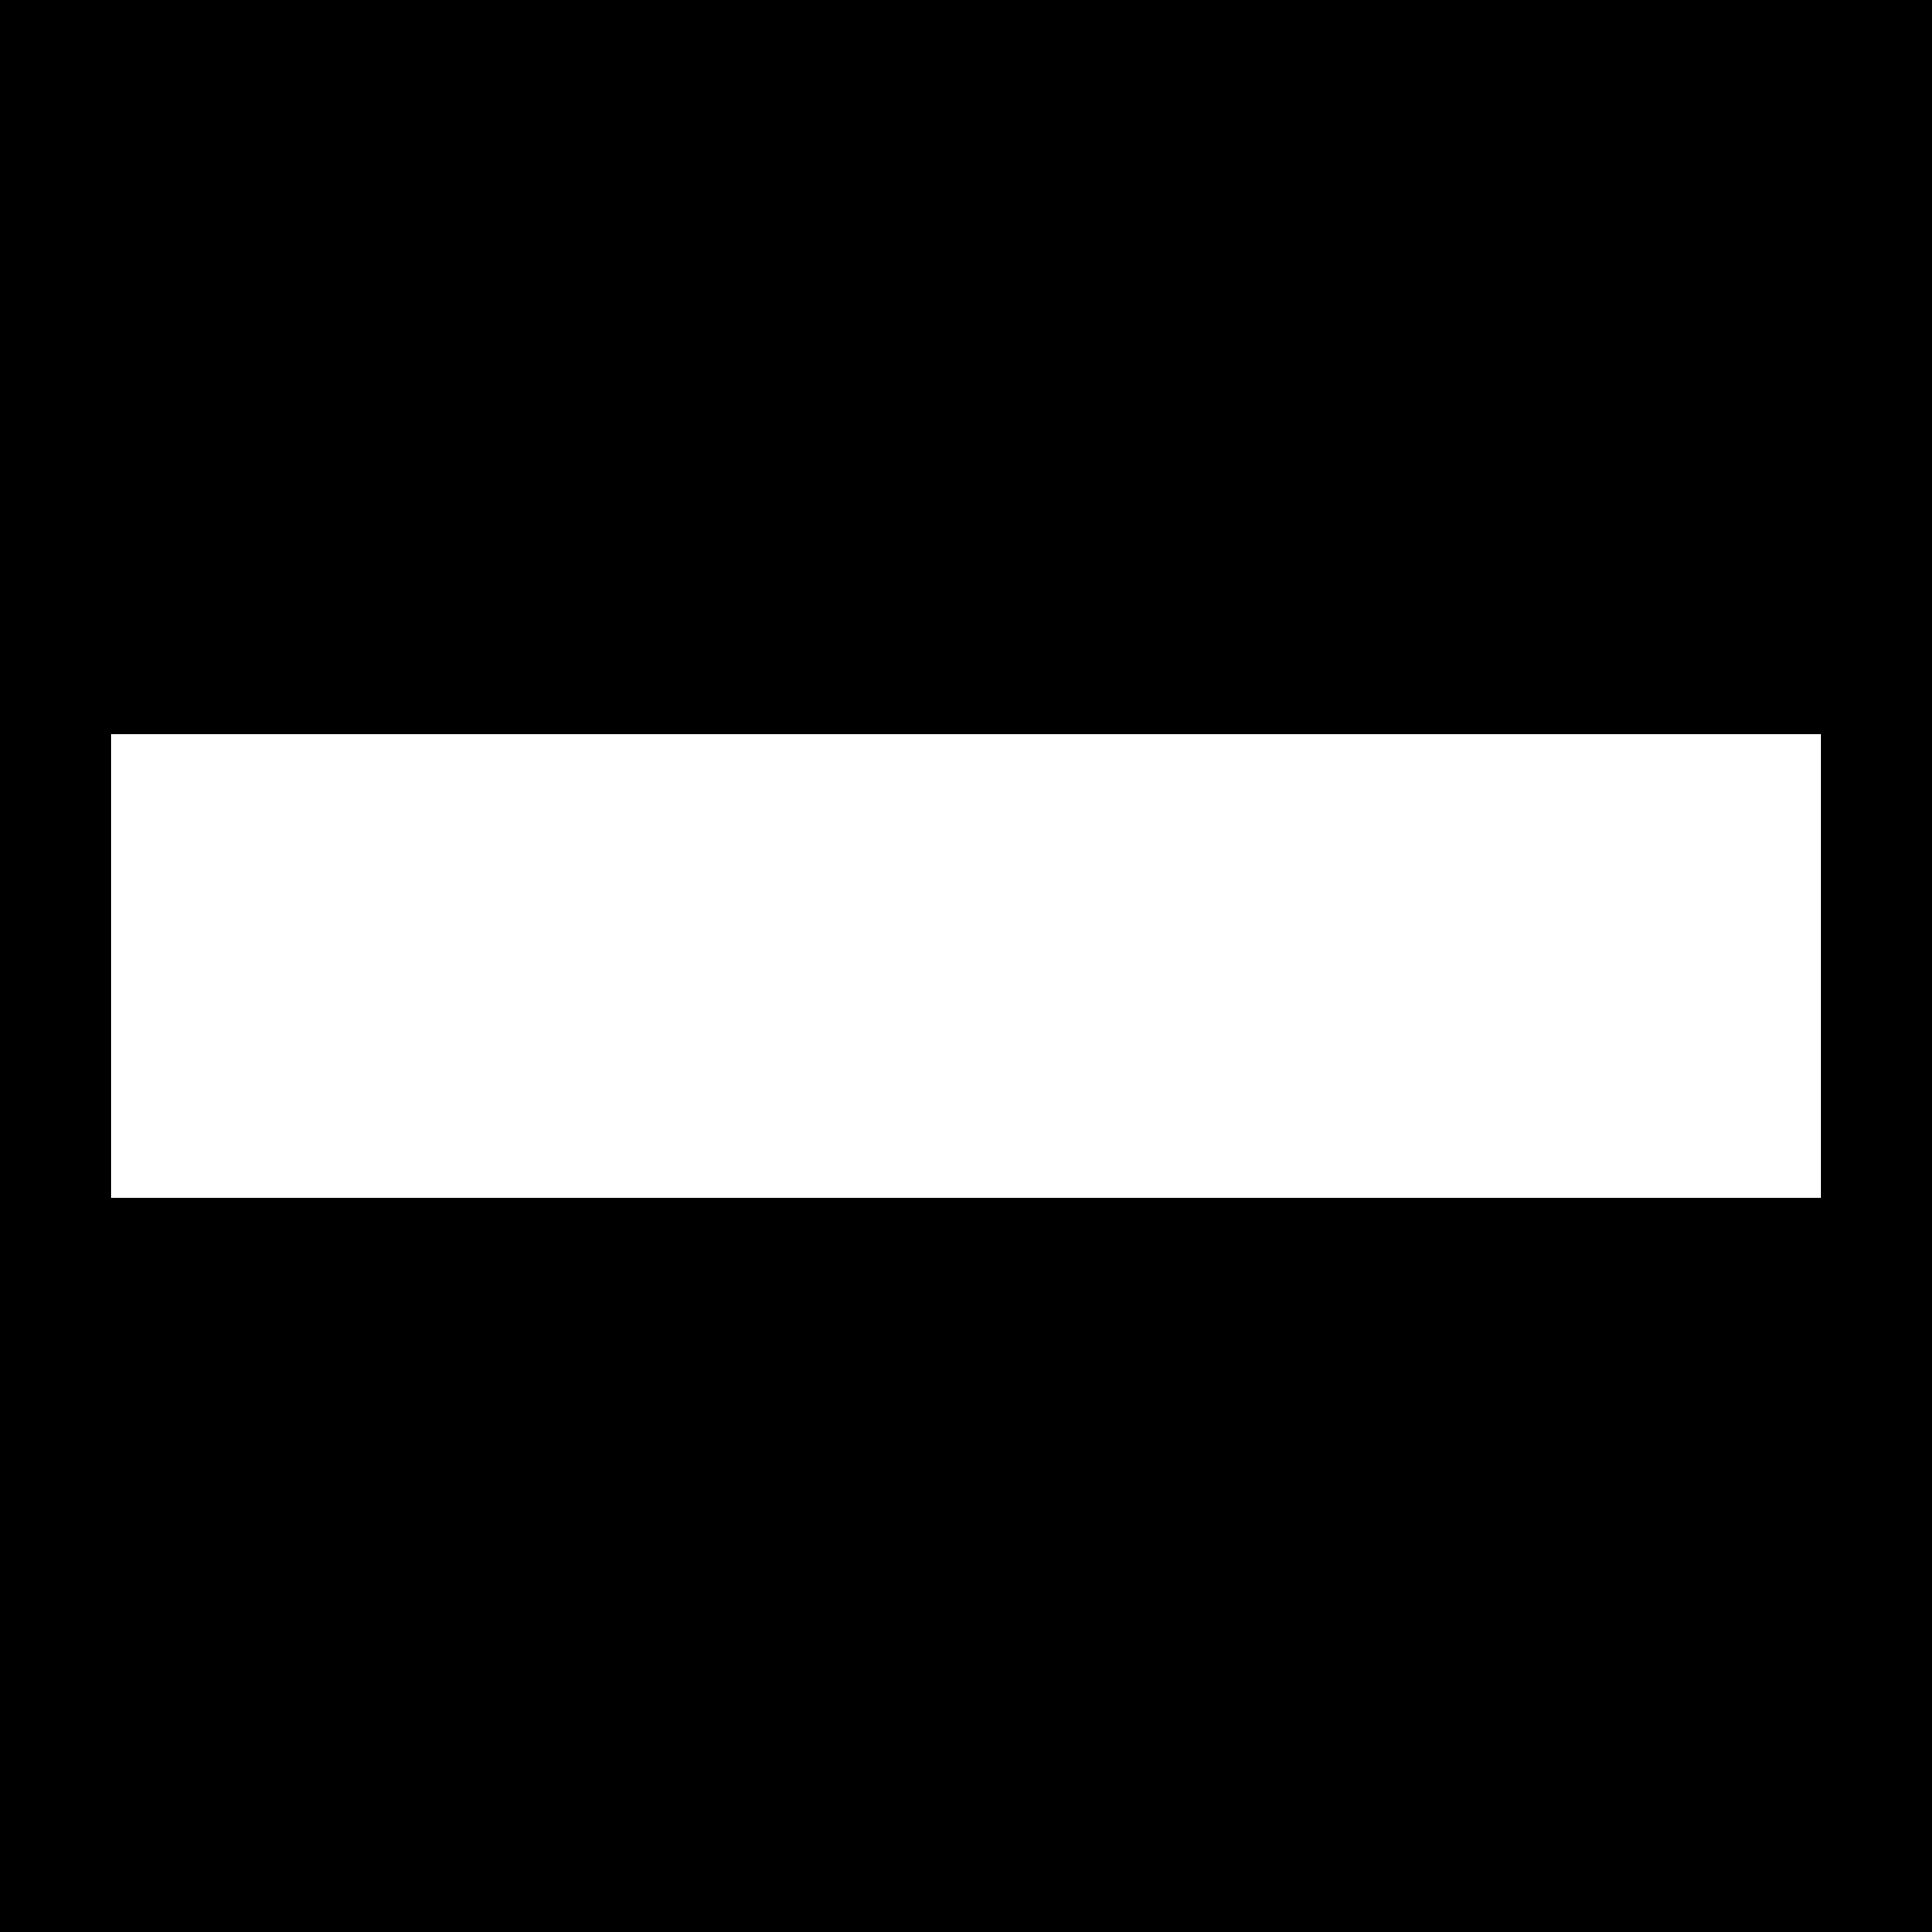 HNTB Logo - HNTB Logo PNG Transparent & SVG Vector